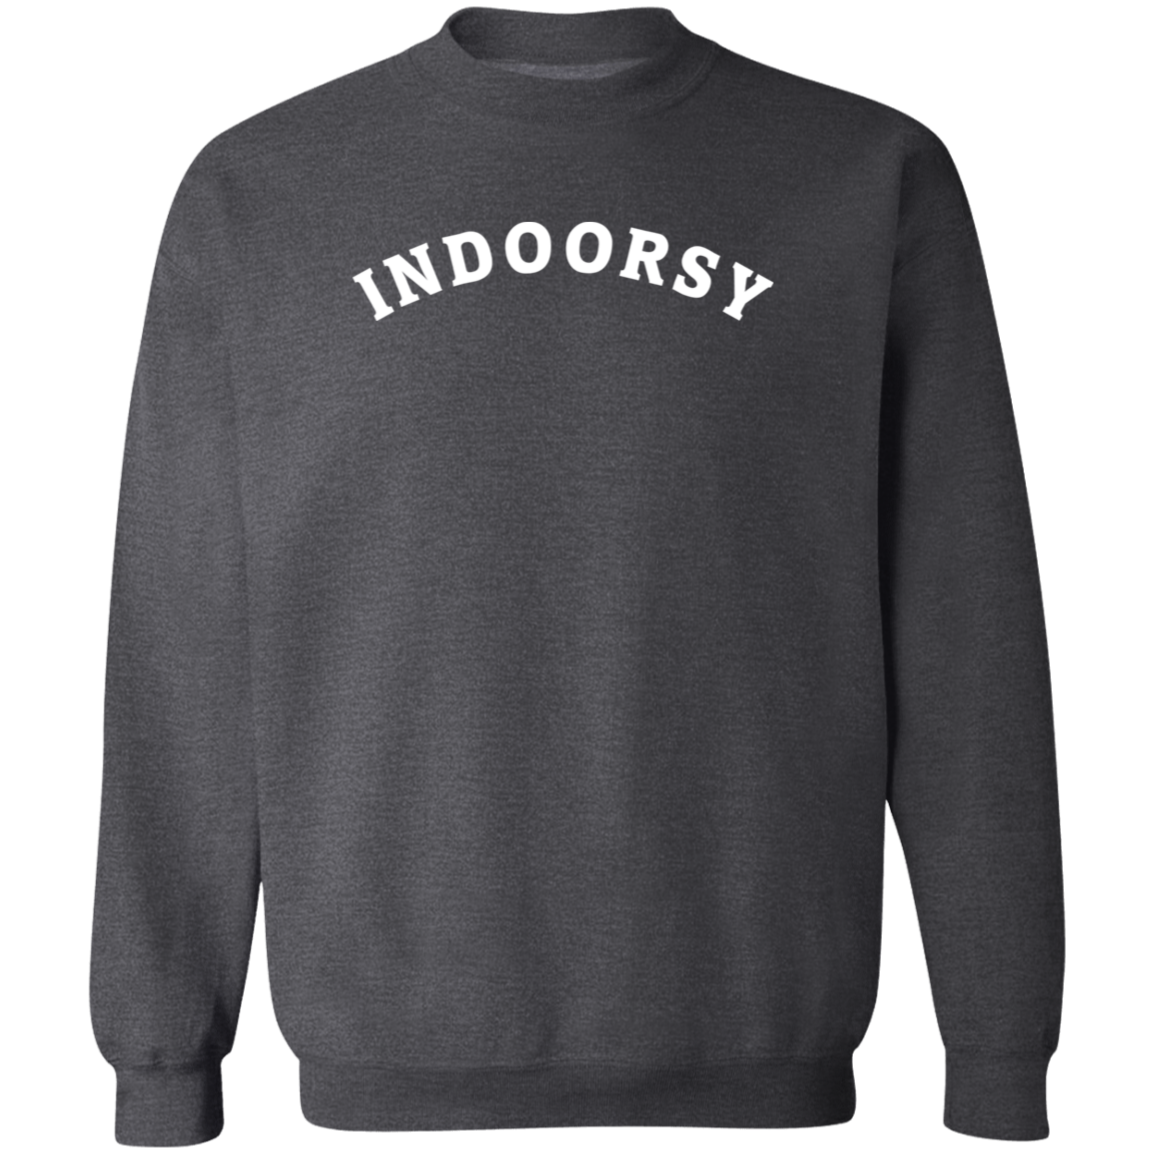 Indoorsy Sweatshirt